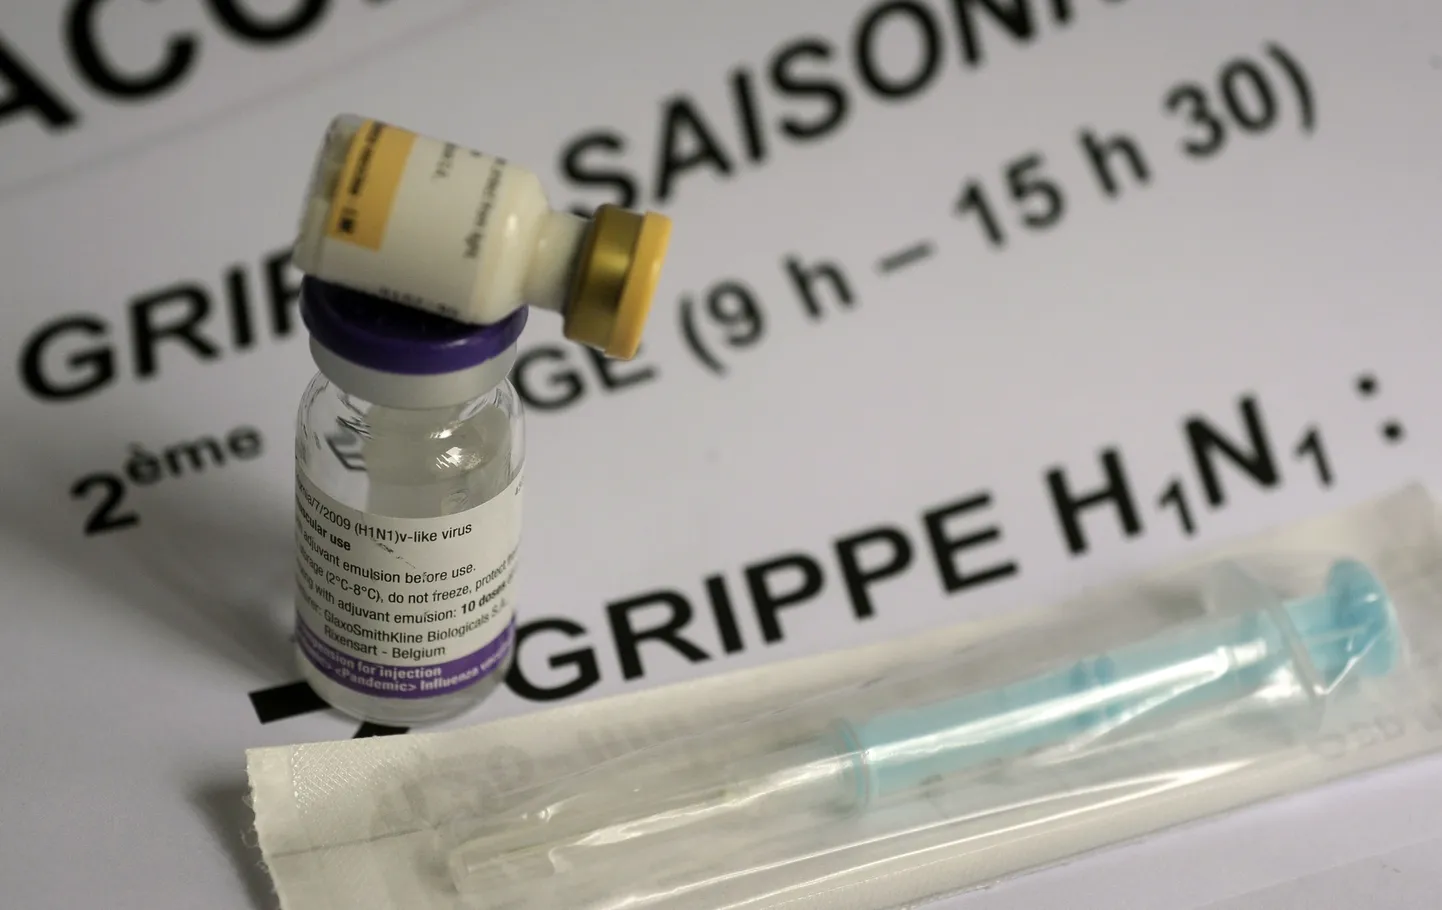 Osa Euroopa riike tellis seagripivaktsiini liiga palju ja nüüd pole kasutamata doosidega midagi peale hakata.